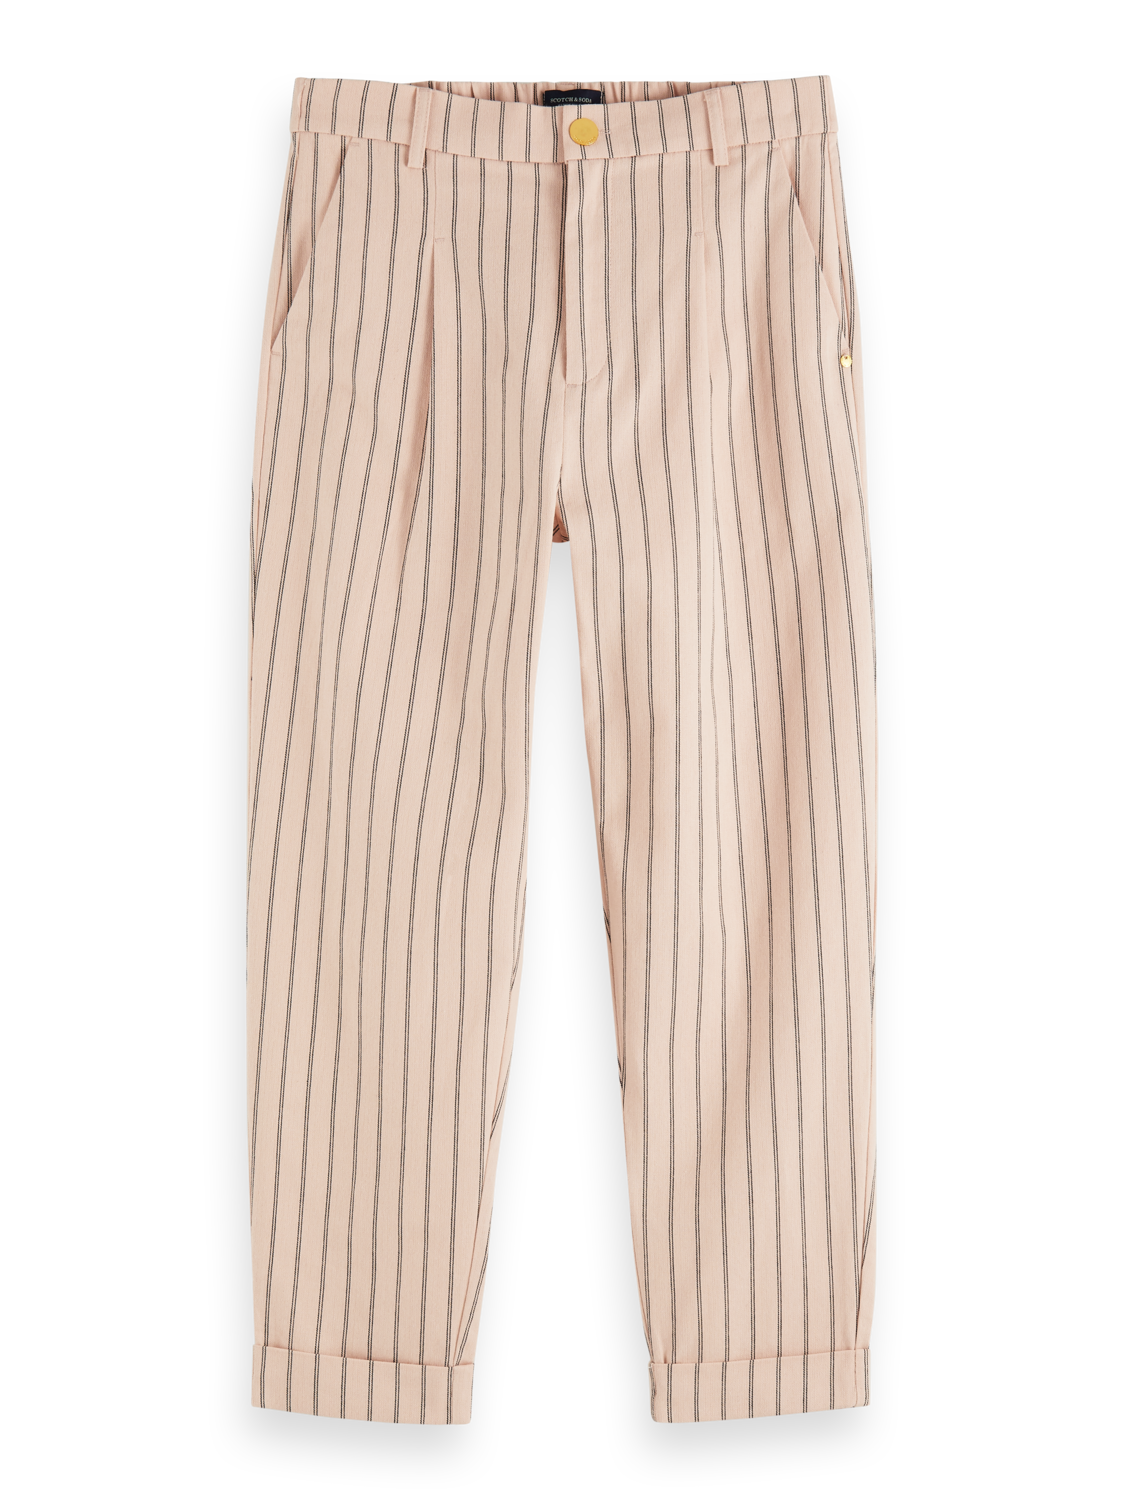 Scotch & Soda Cotton Pinstripe Cuffed Trousers